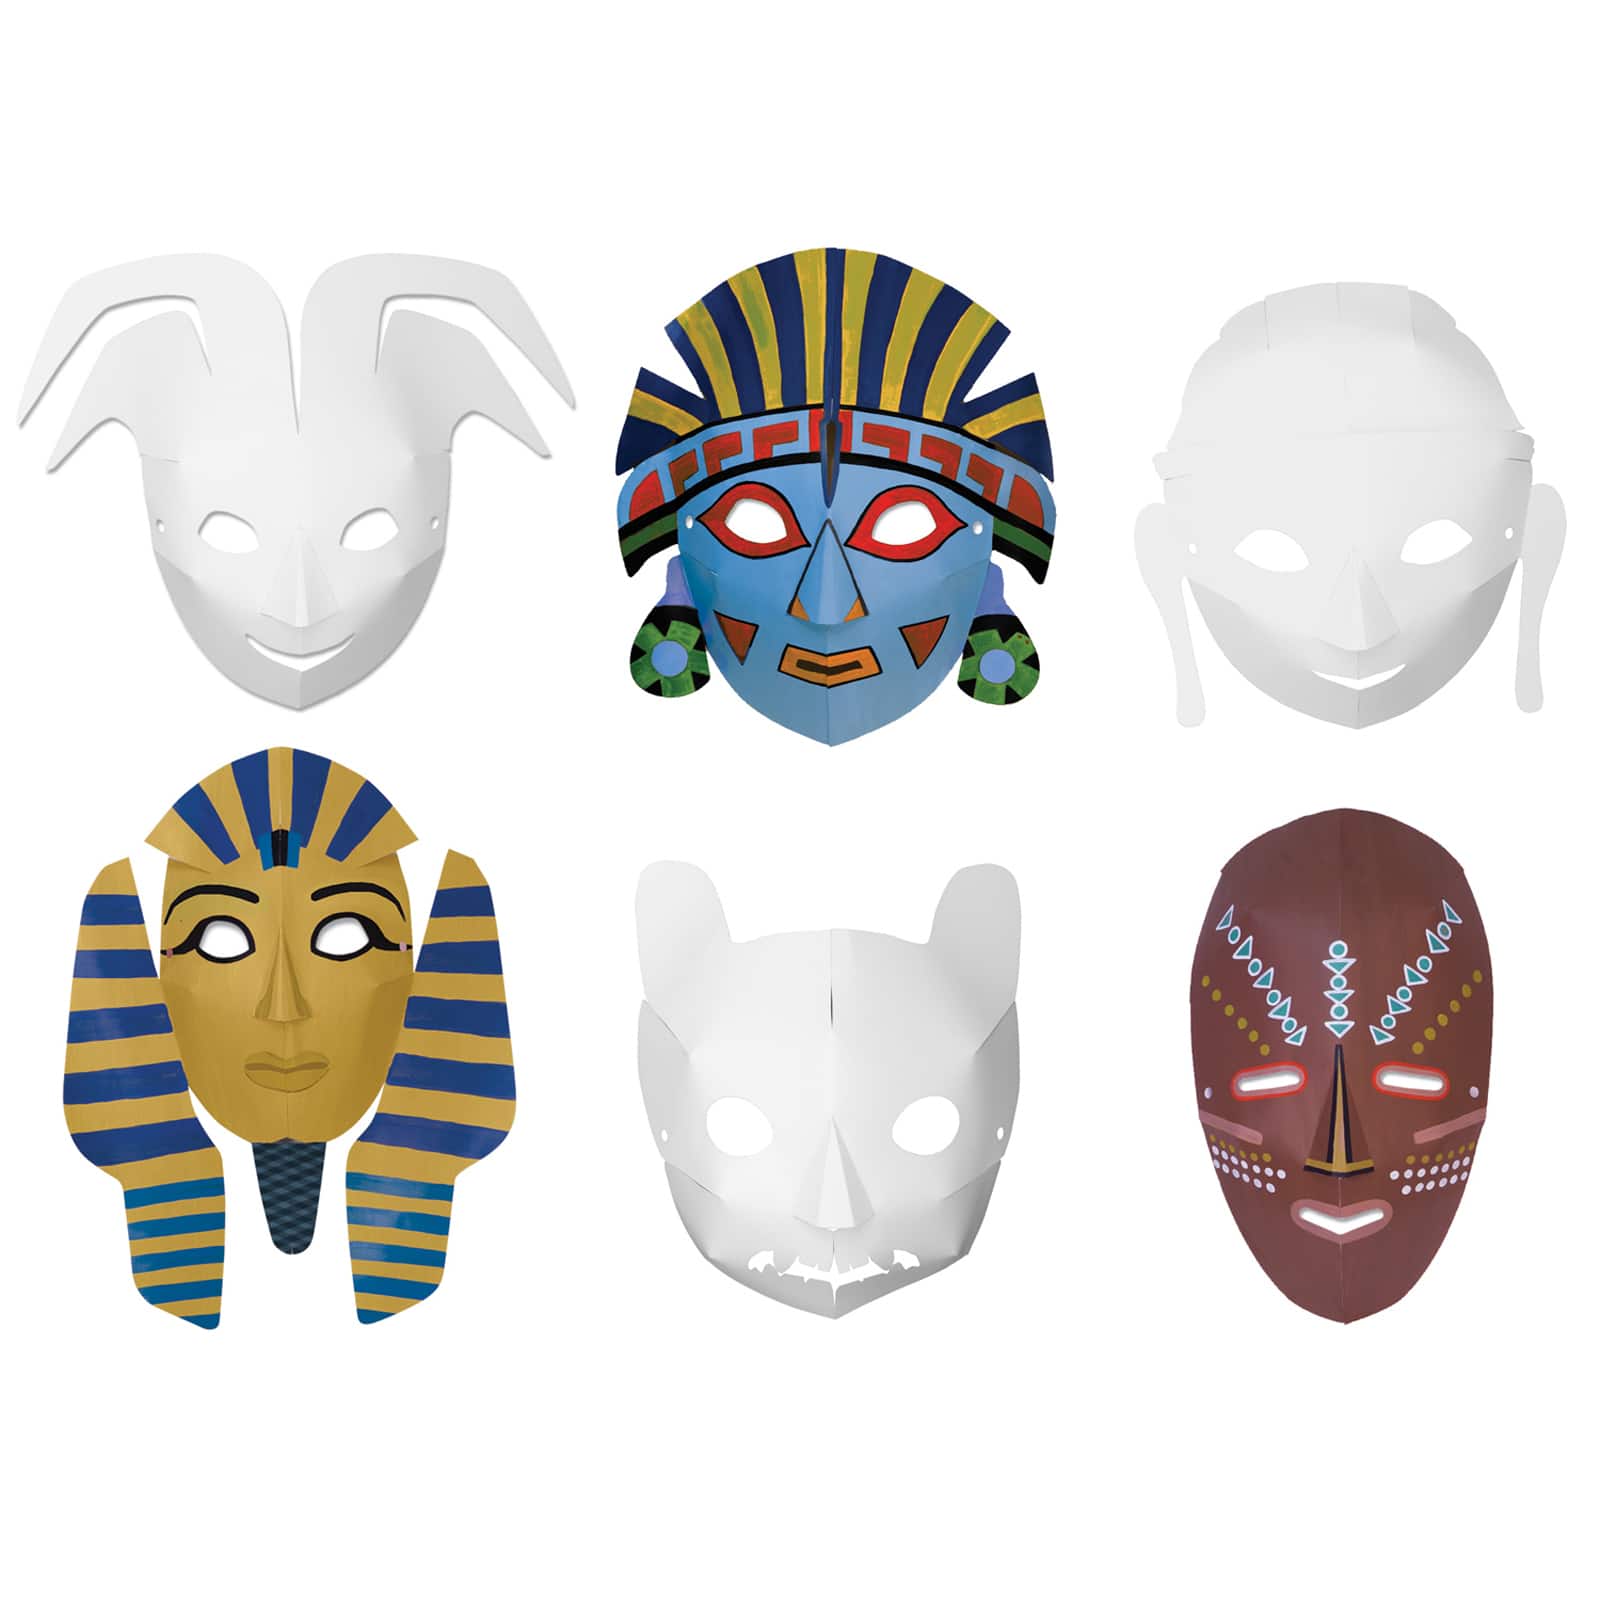 4 Packs: 3 Packs 24 ct. (288 total) Creativity Street&#xAE; Multi-Cultural Die-Cut Paper Masks